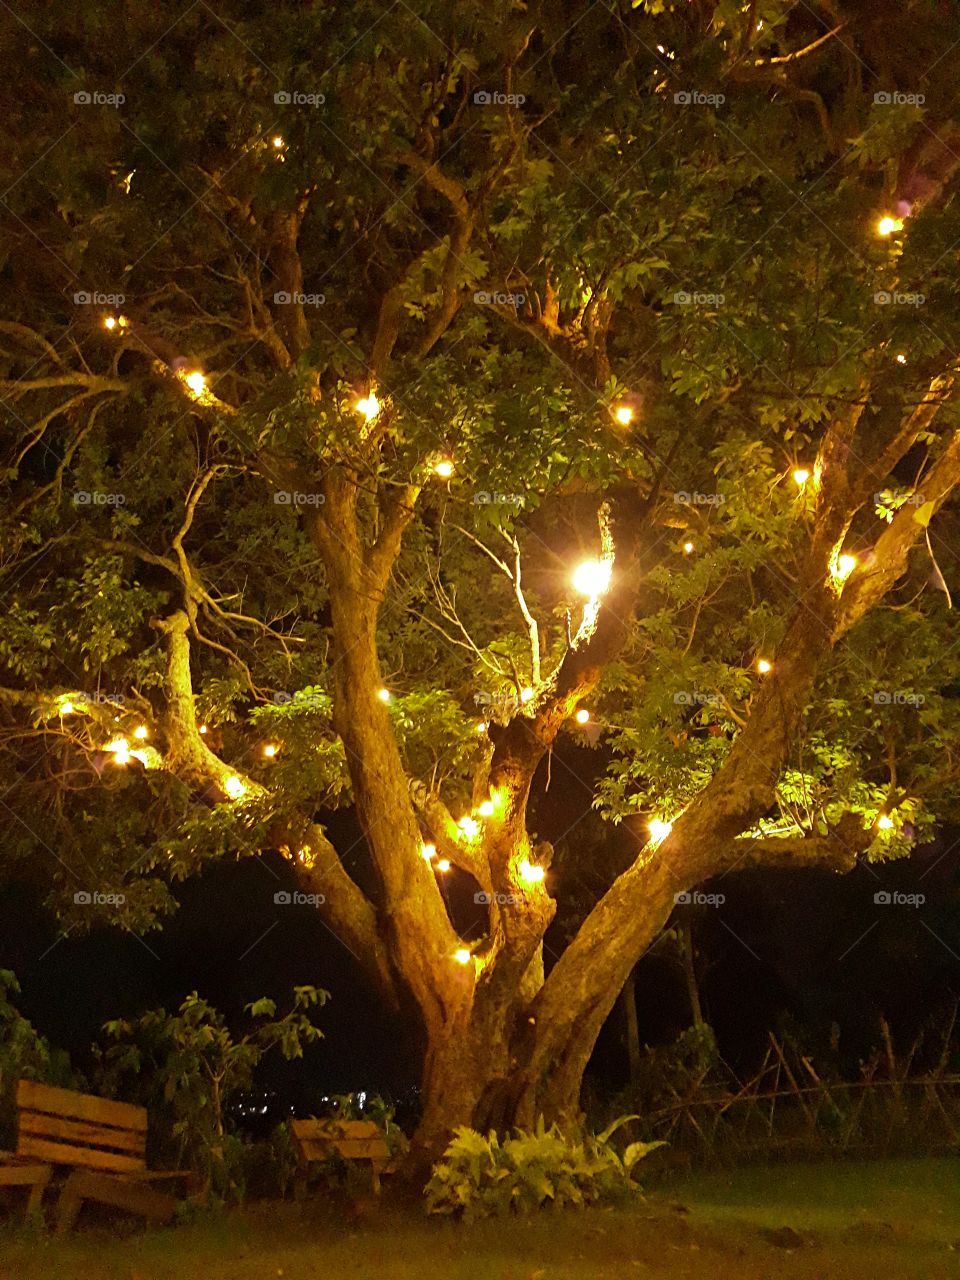 Tree of Lights